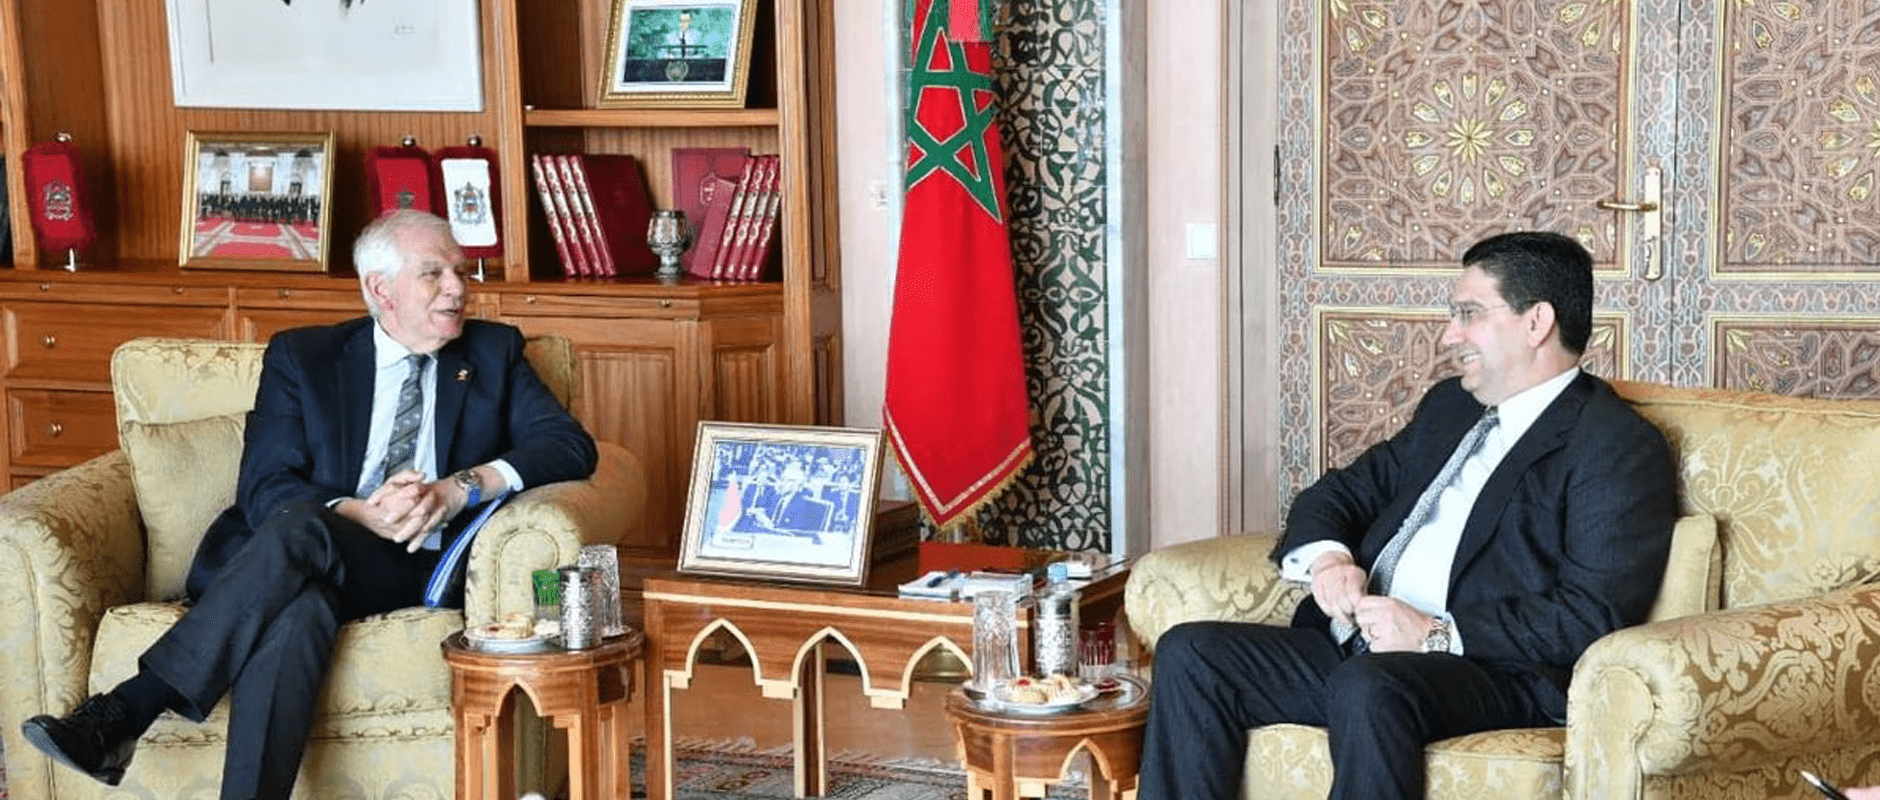 Sahara marocain : L’UE valorise beaucoup les efforts sérieux et crédibles du Maroc